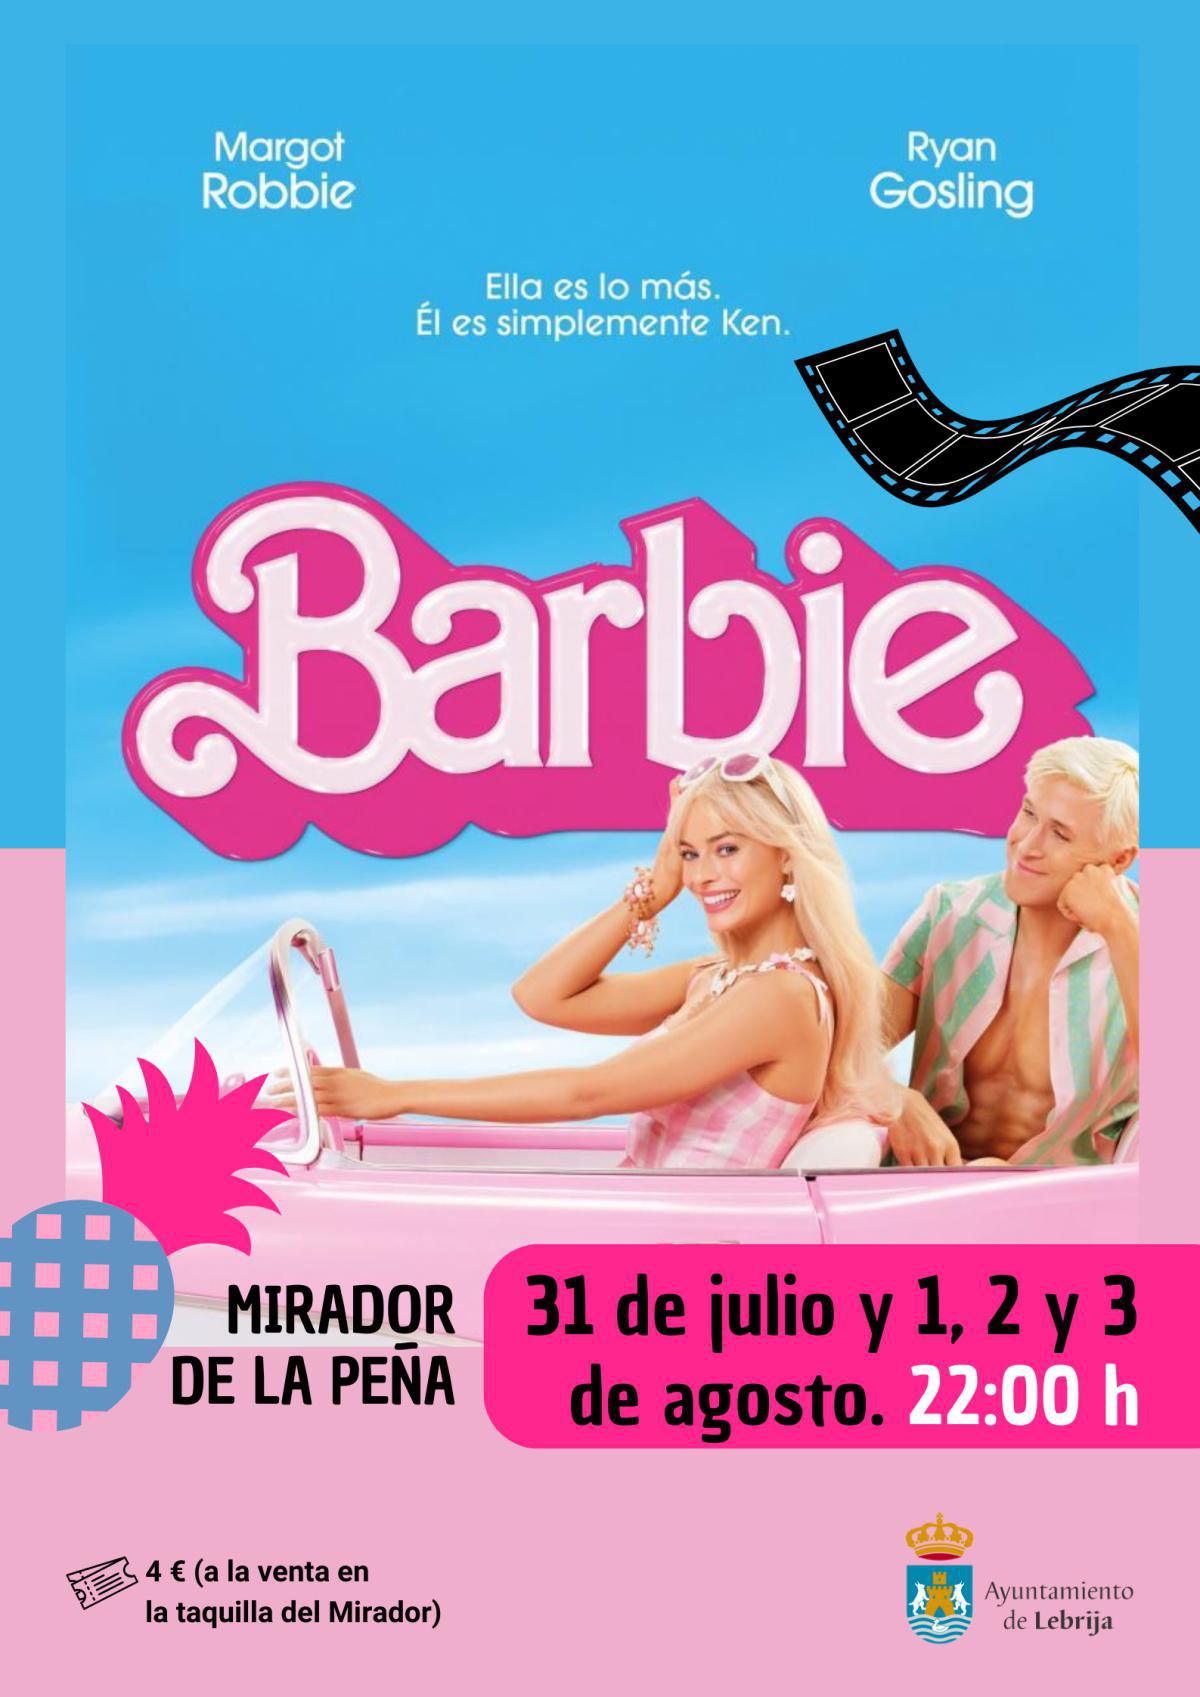 La película Barbie recién estrenada se proyectará en Lebrija la próxima semana